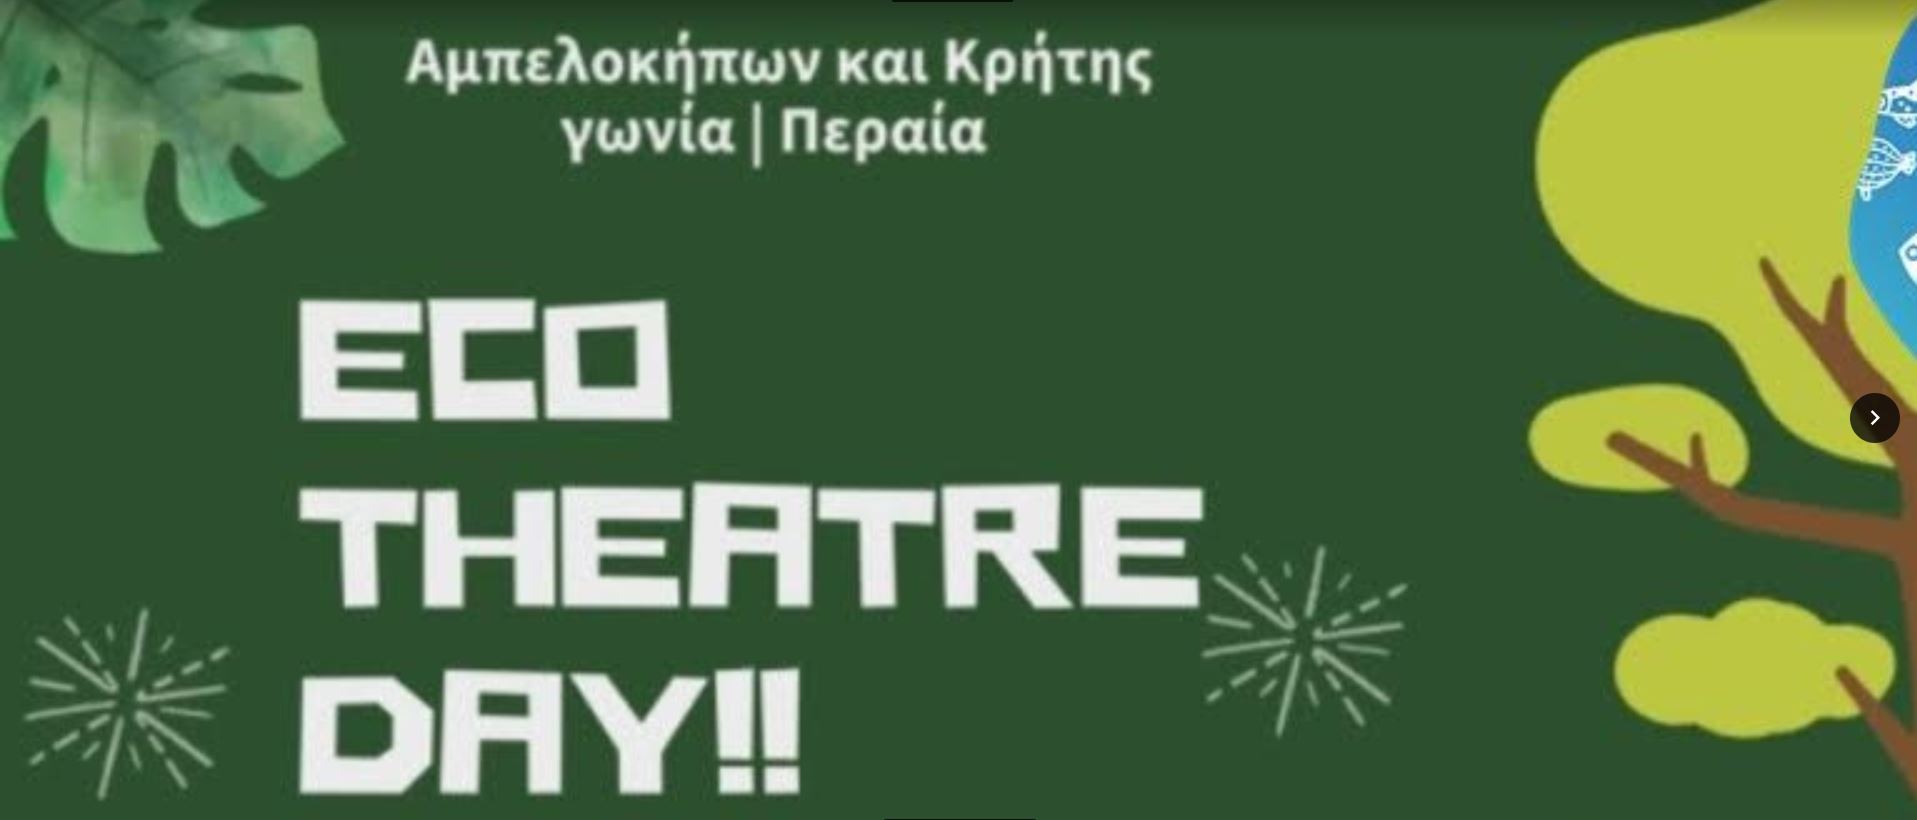 Eco theatre day